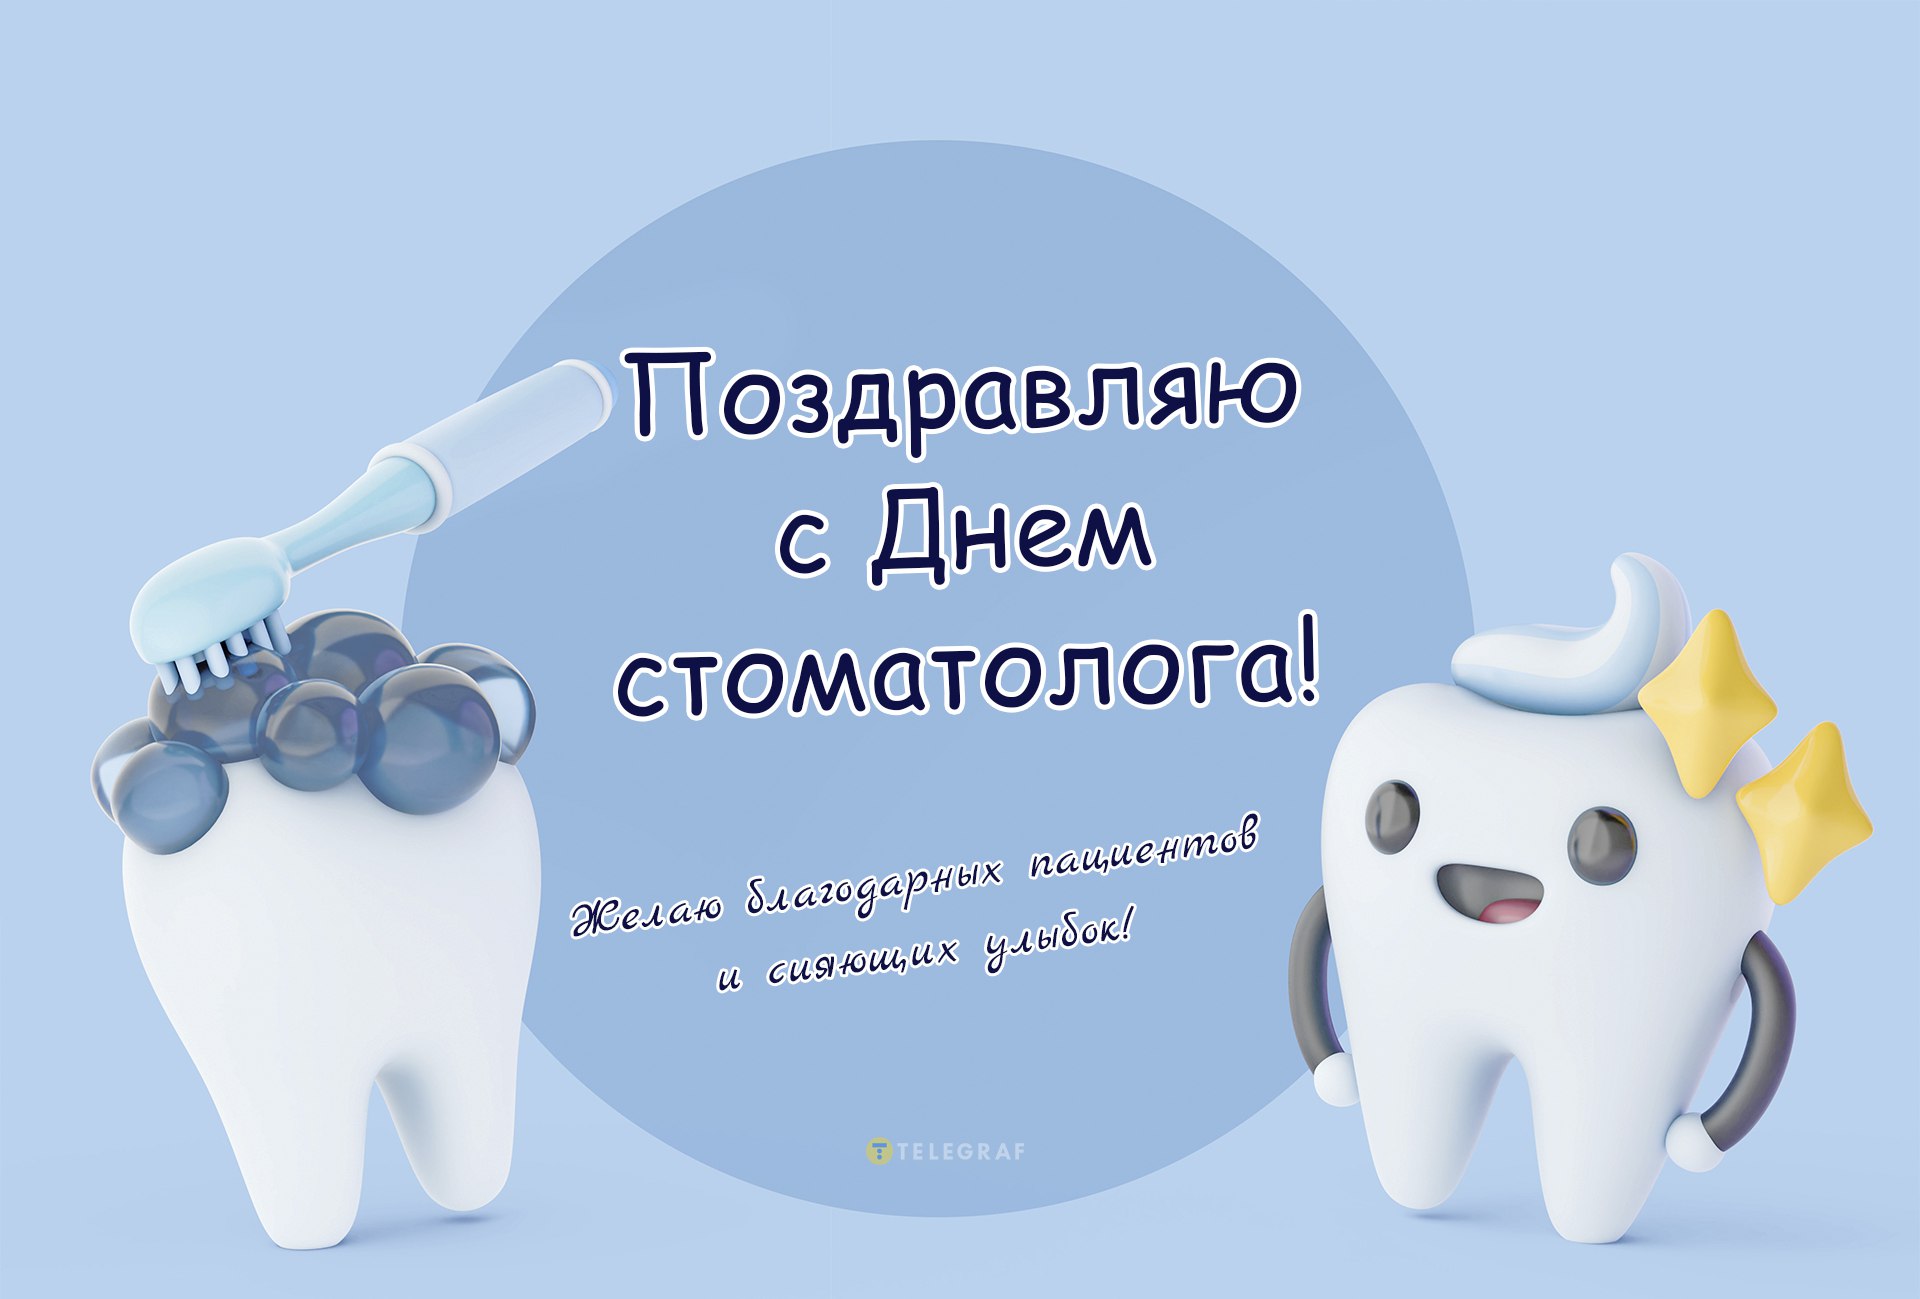 9 февраля стоматологи Санкт-Петербурга отметят свой профессиональный праздник